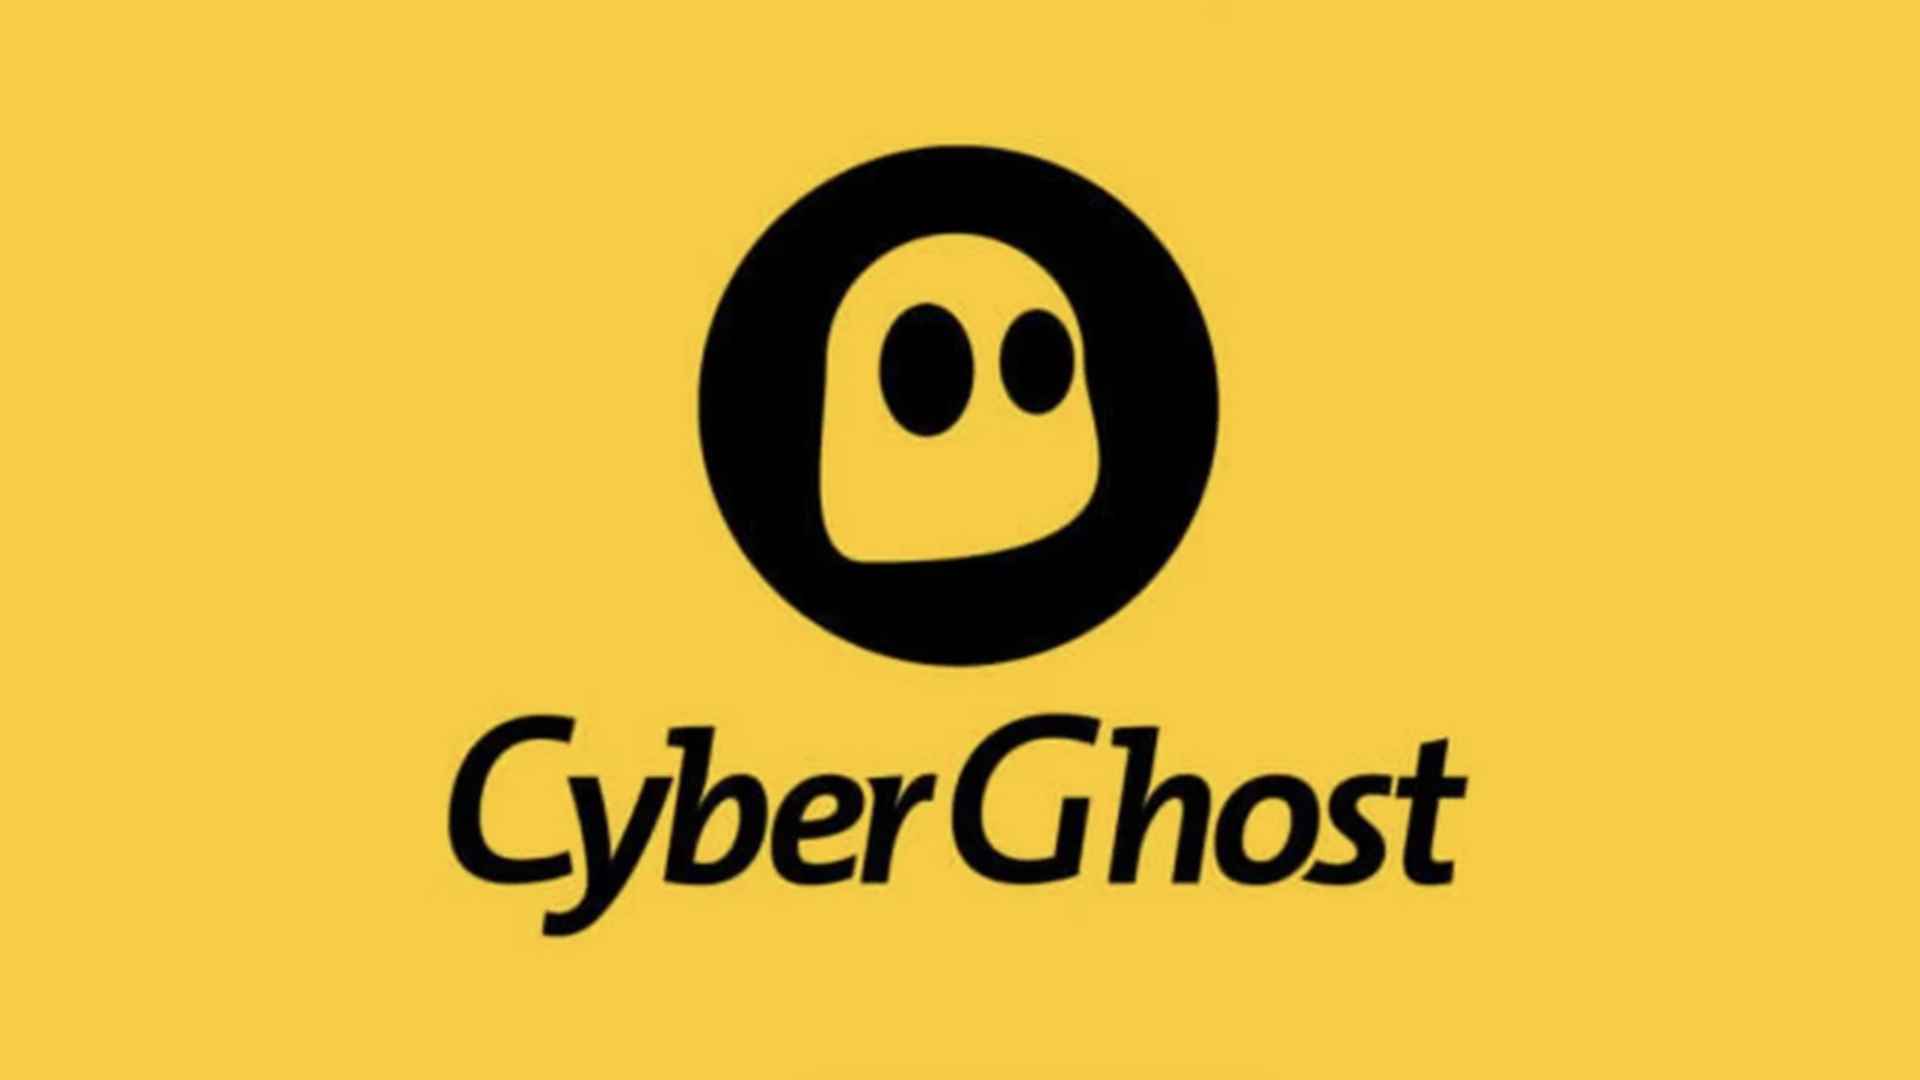 En İyi Linux VPN: CyberGhost.  Resim şirket logosunu gösterir.